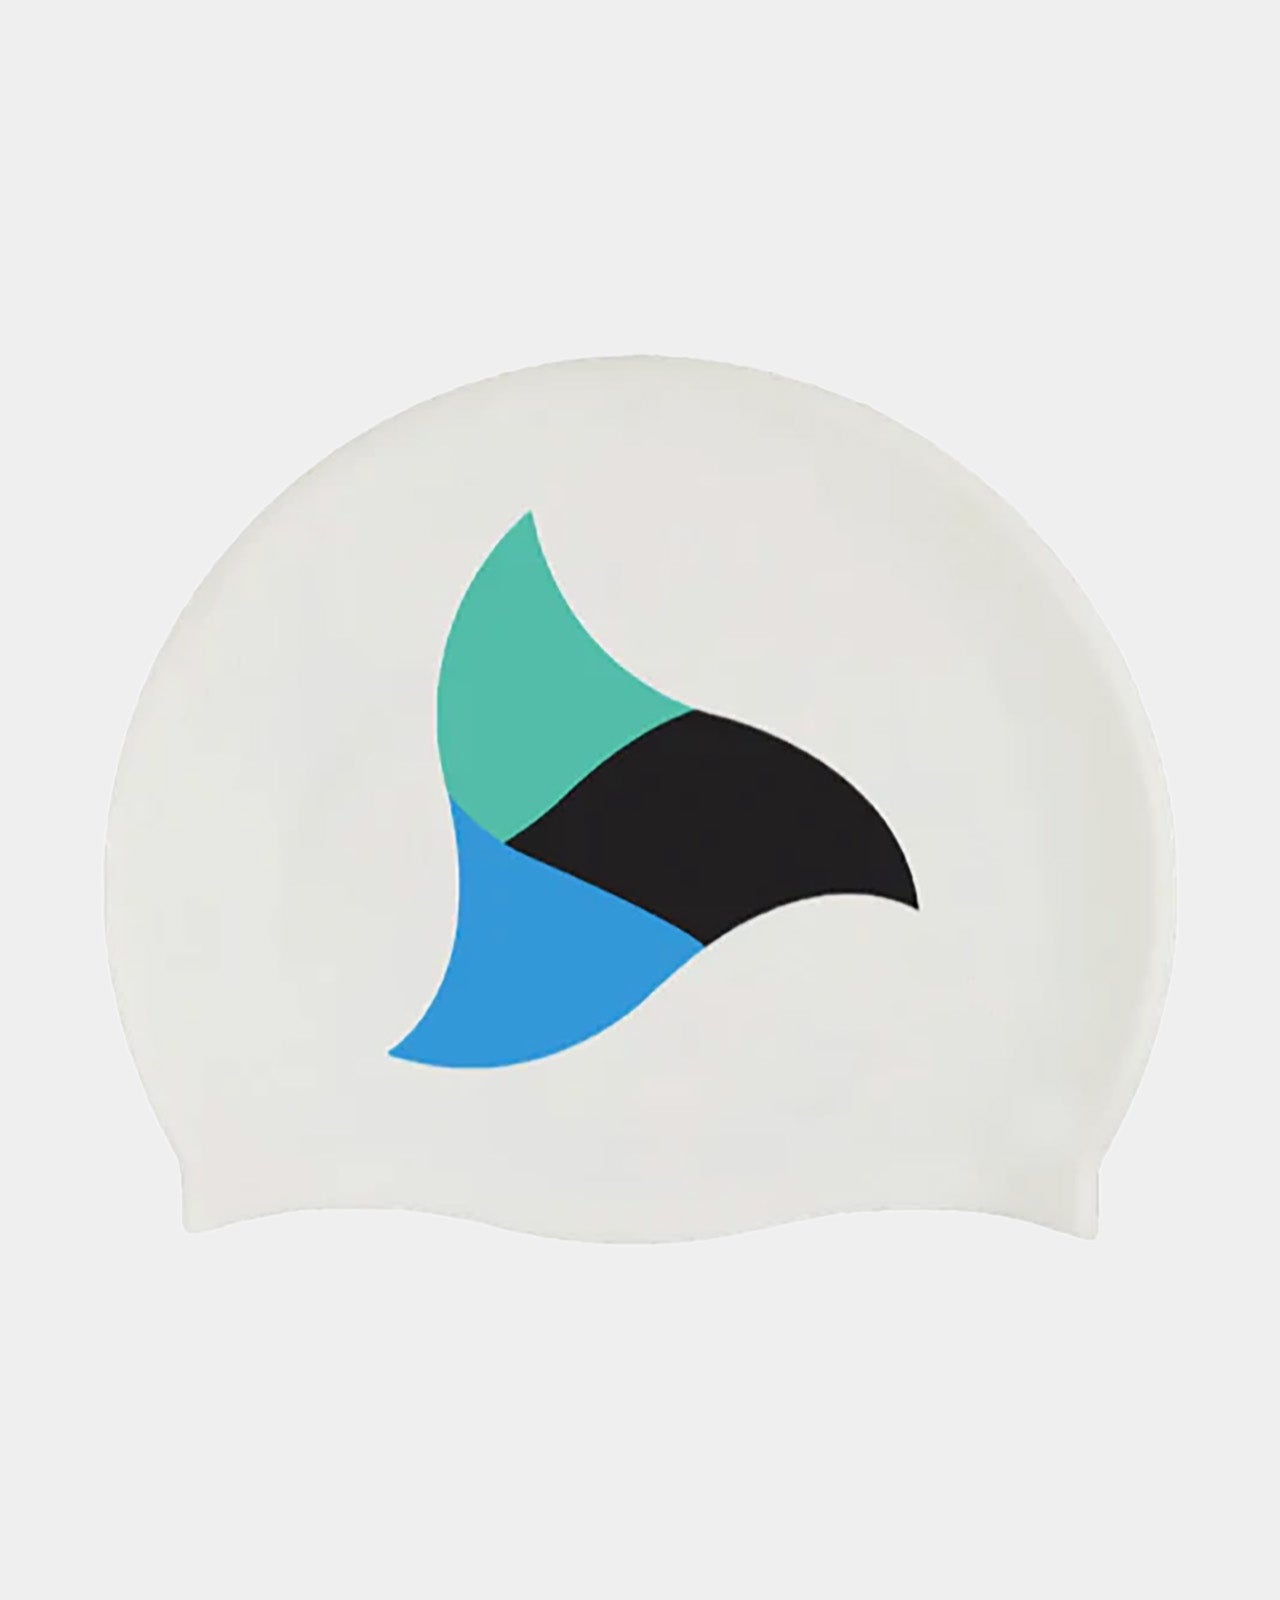 TRI-FIT Silicone Swim Cap - White